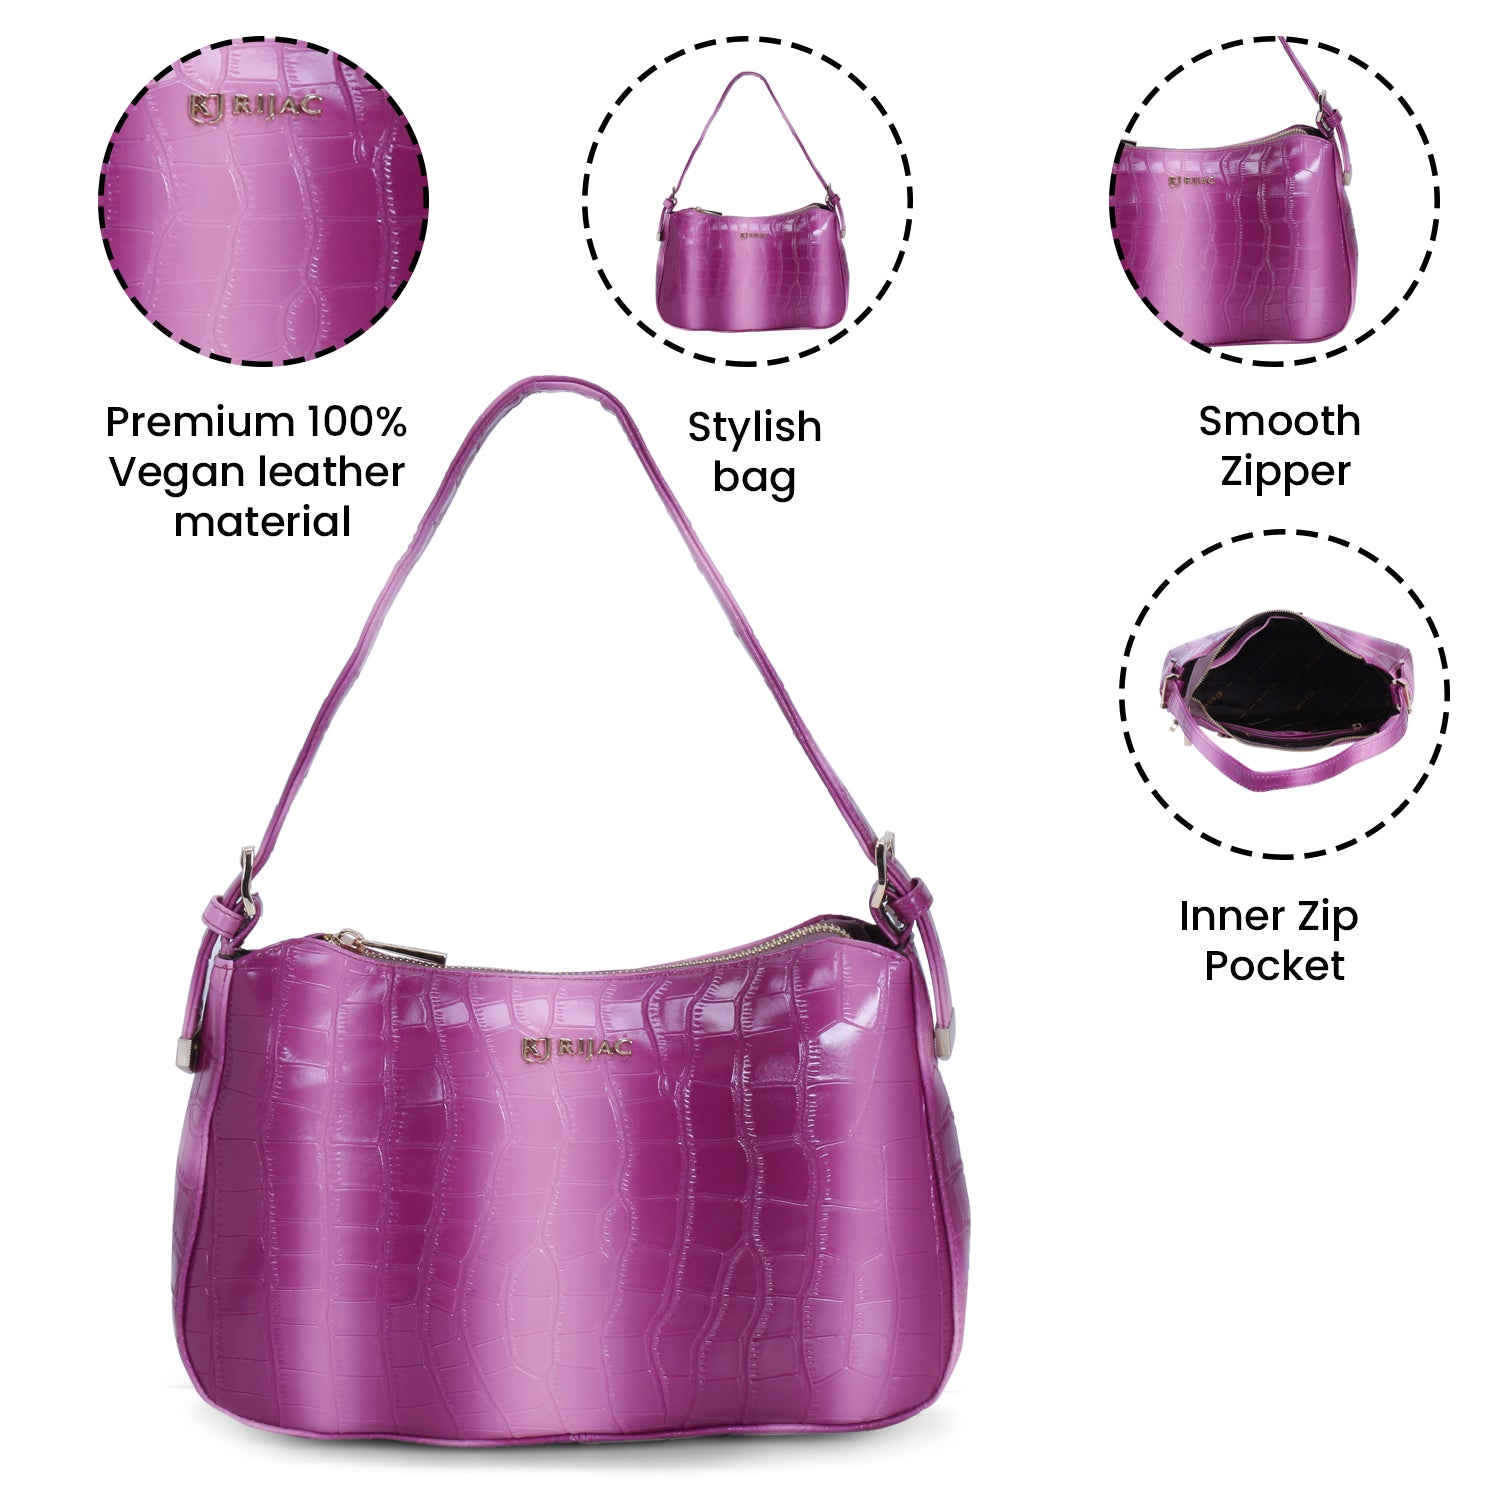 Purple embossed leather handbag.